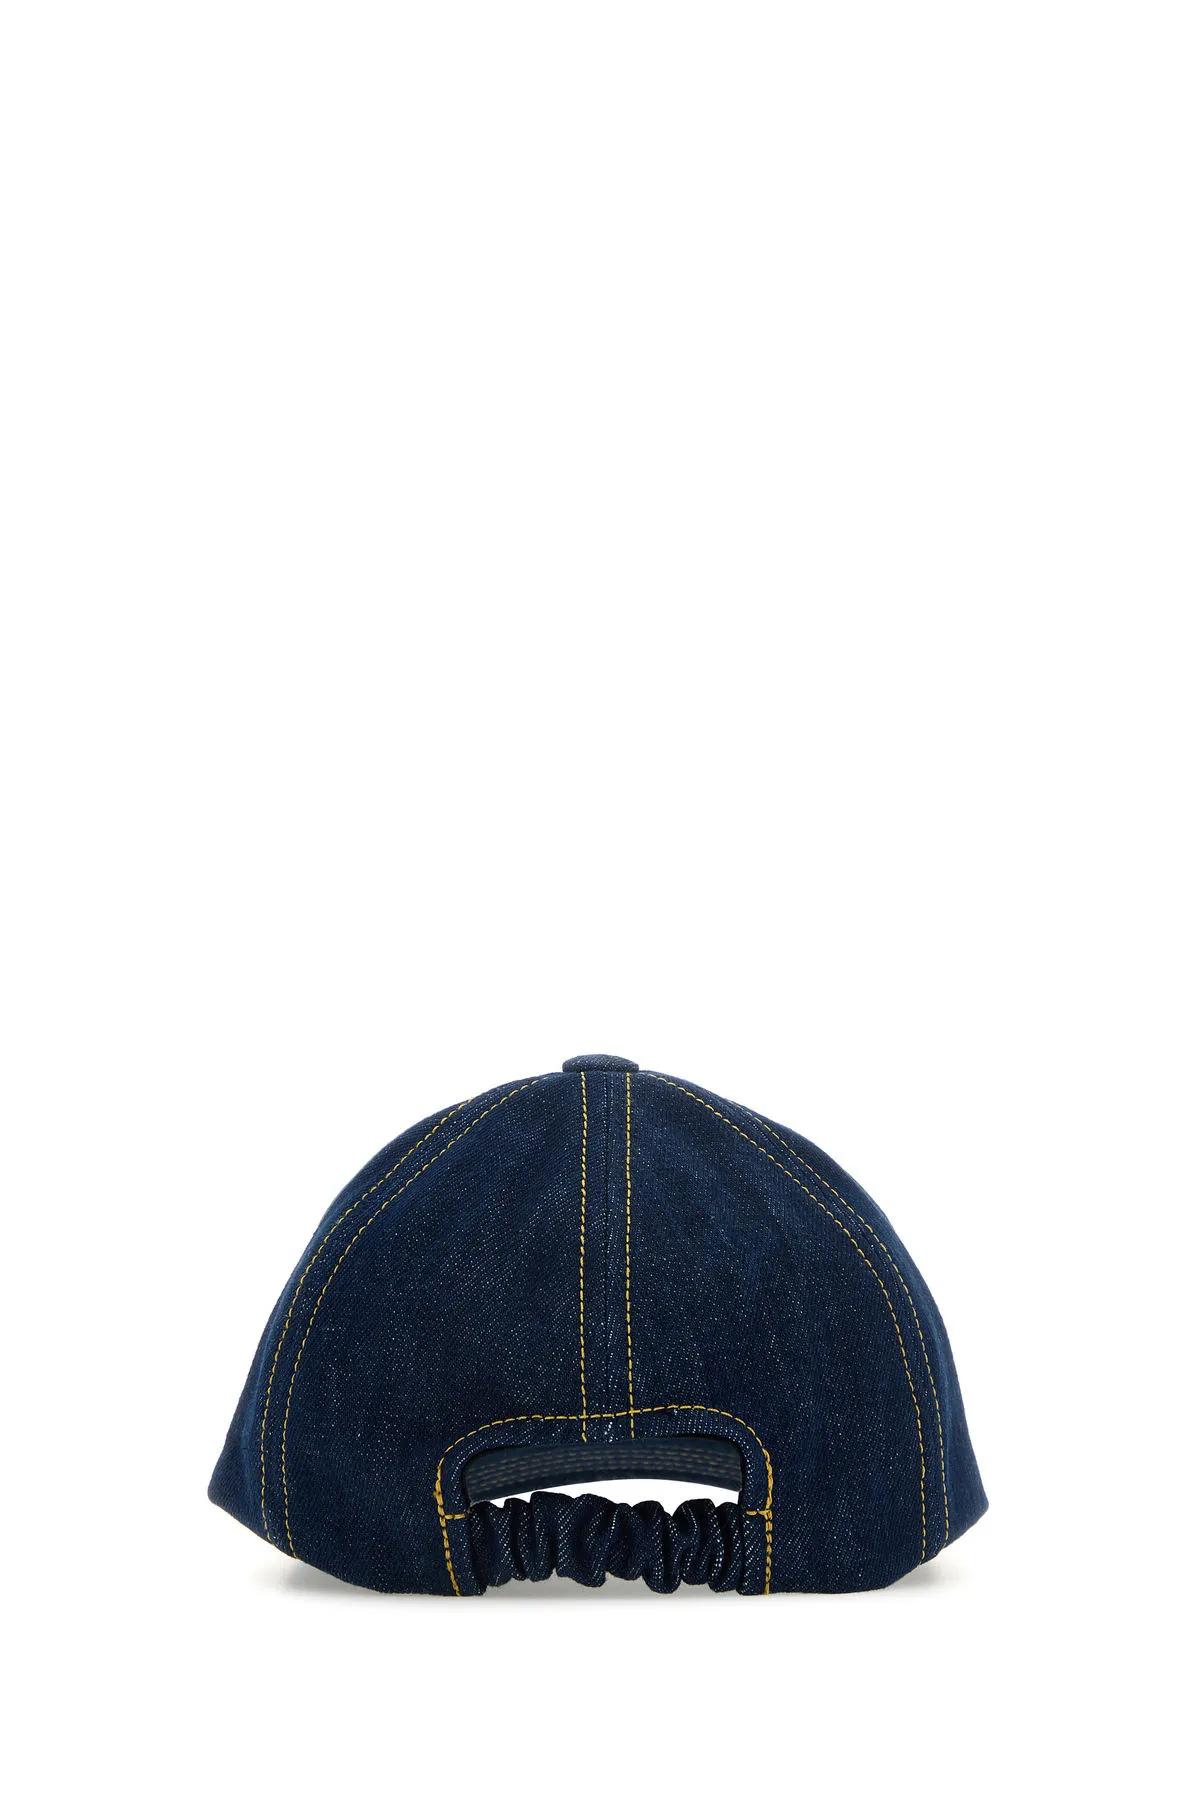 Shop Patou Blue Denim Baseball Cap